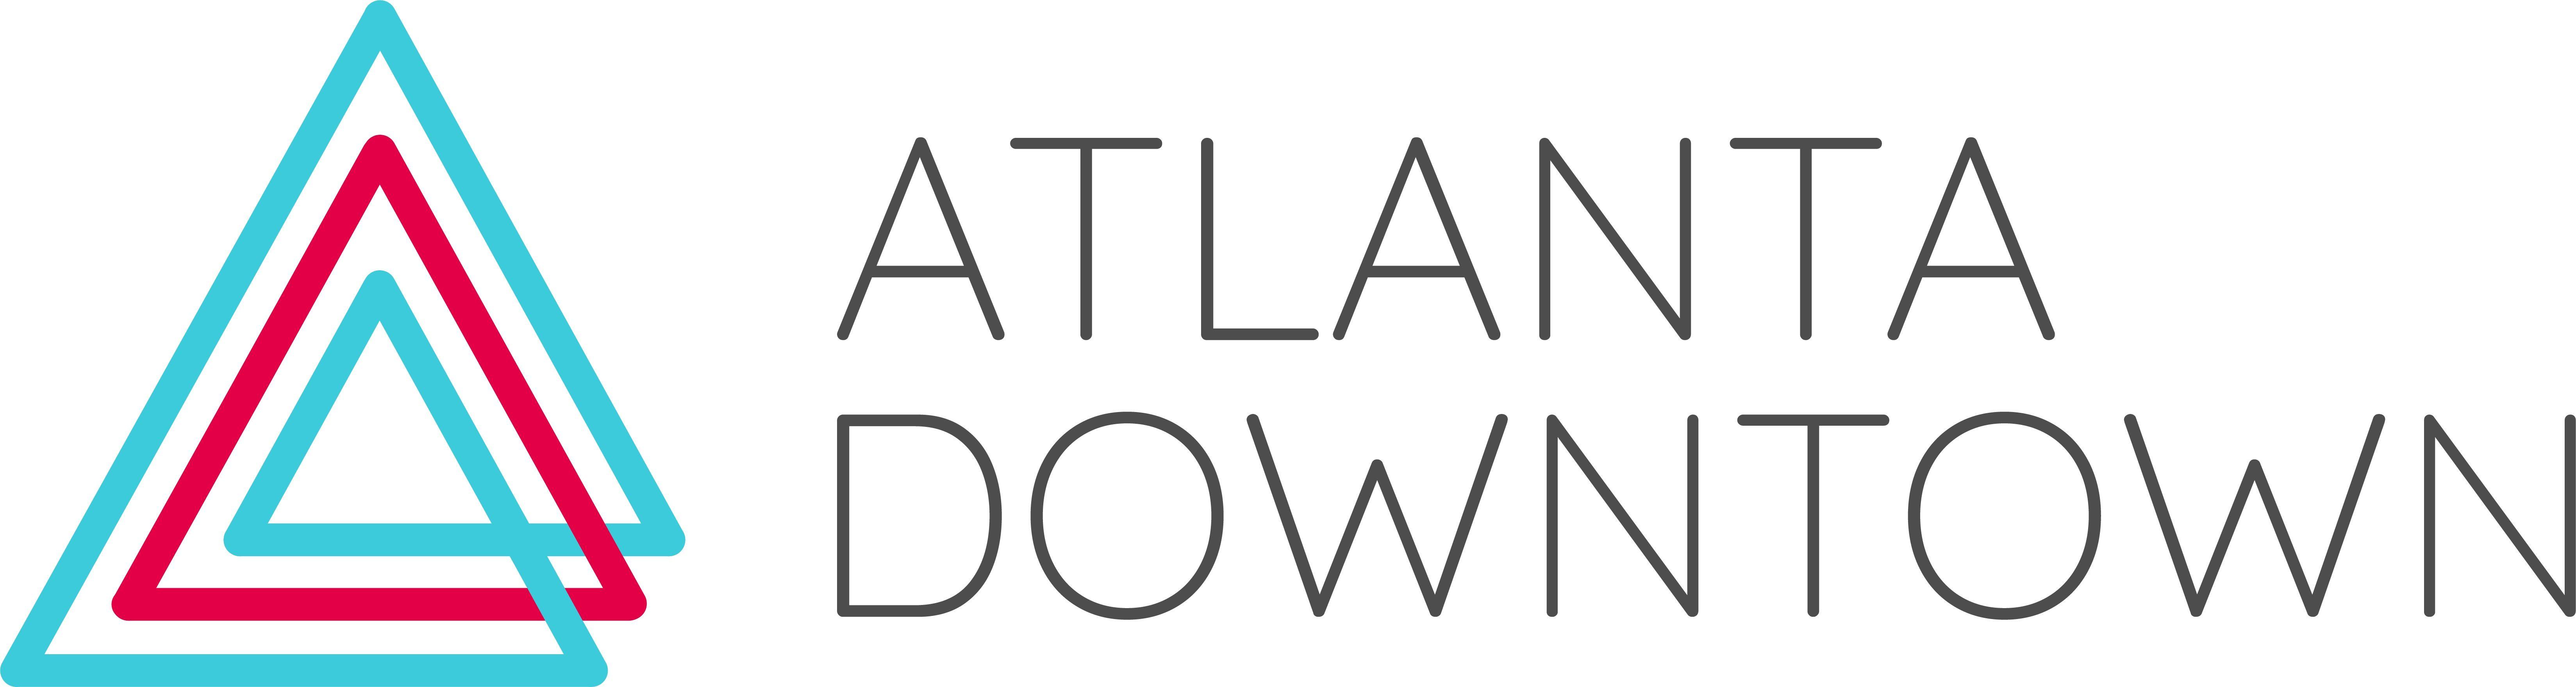 Downtown Logo - ATL DTN